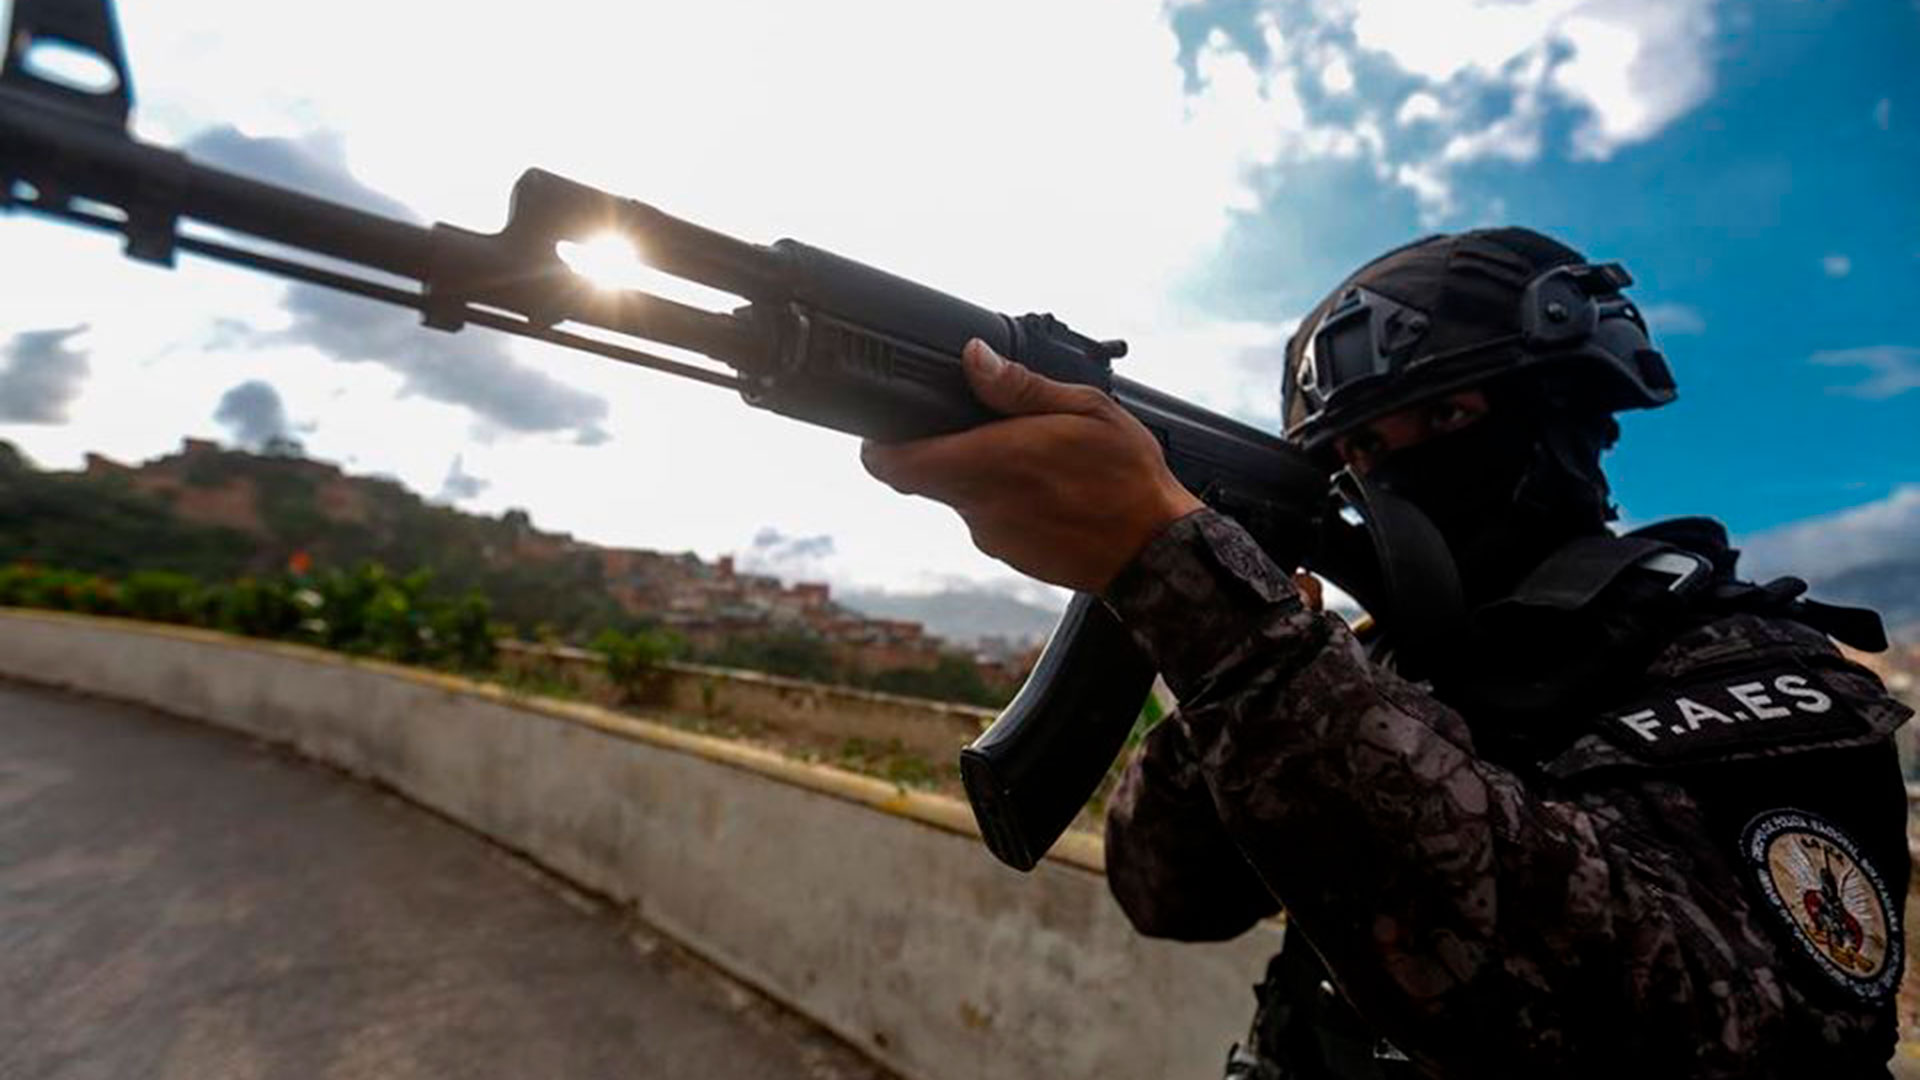 Venezuela registra 40,4 asesinatos por cada 100.000 habitantes. De acuerdo con el Observatorio Venezolano de Violencia (OVV), en 2022 hubo un total de 9.367 muertes violentas. Esto se traduce en un promedio de 26 asesinatos por día.